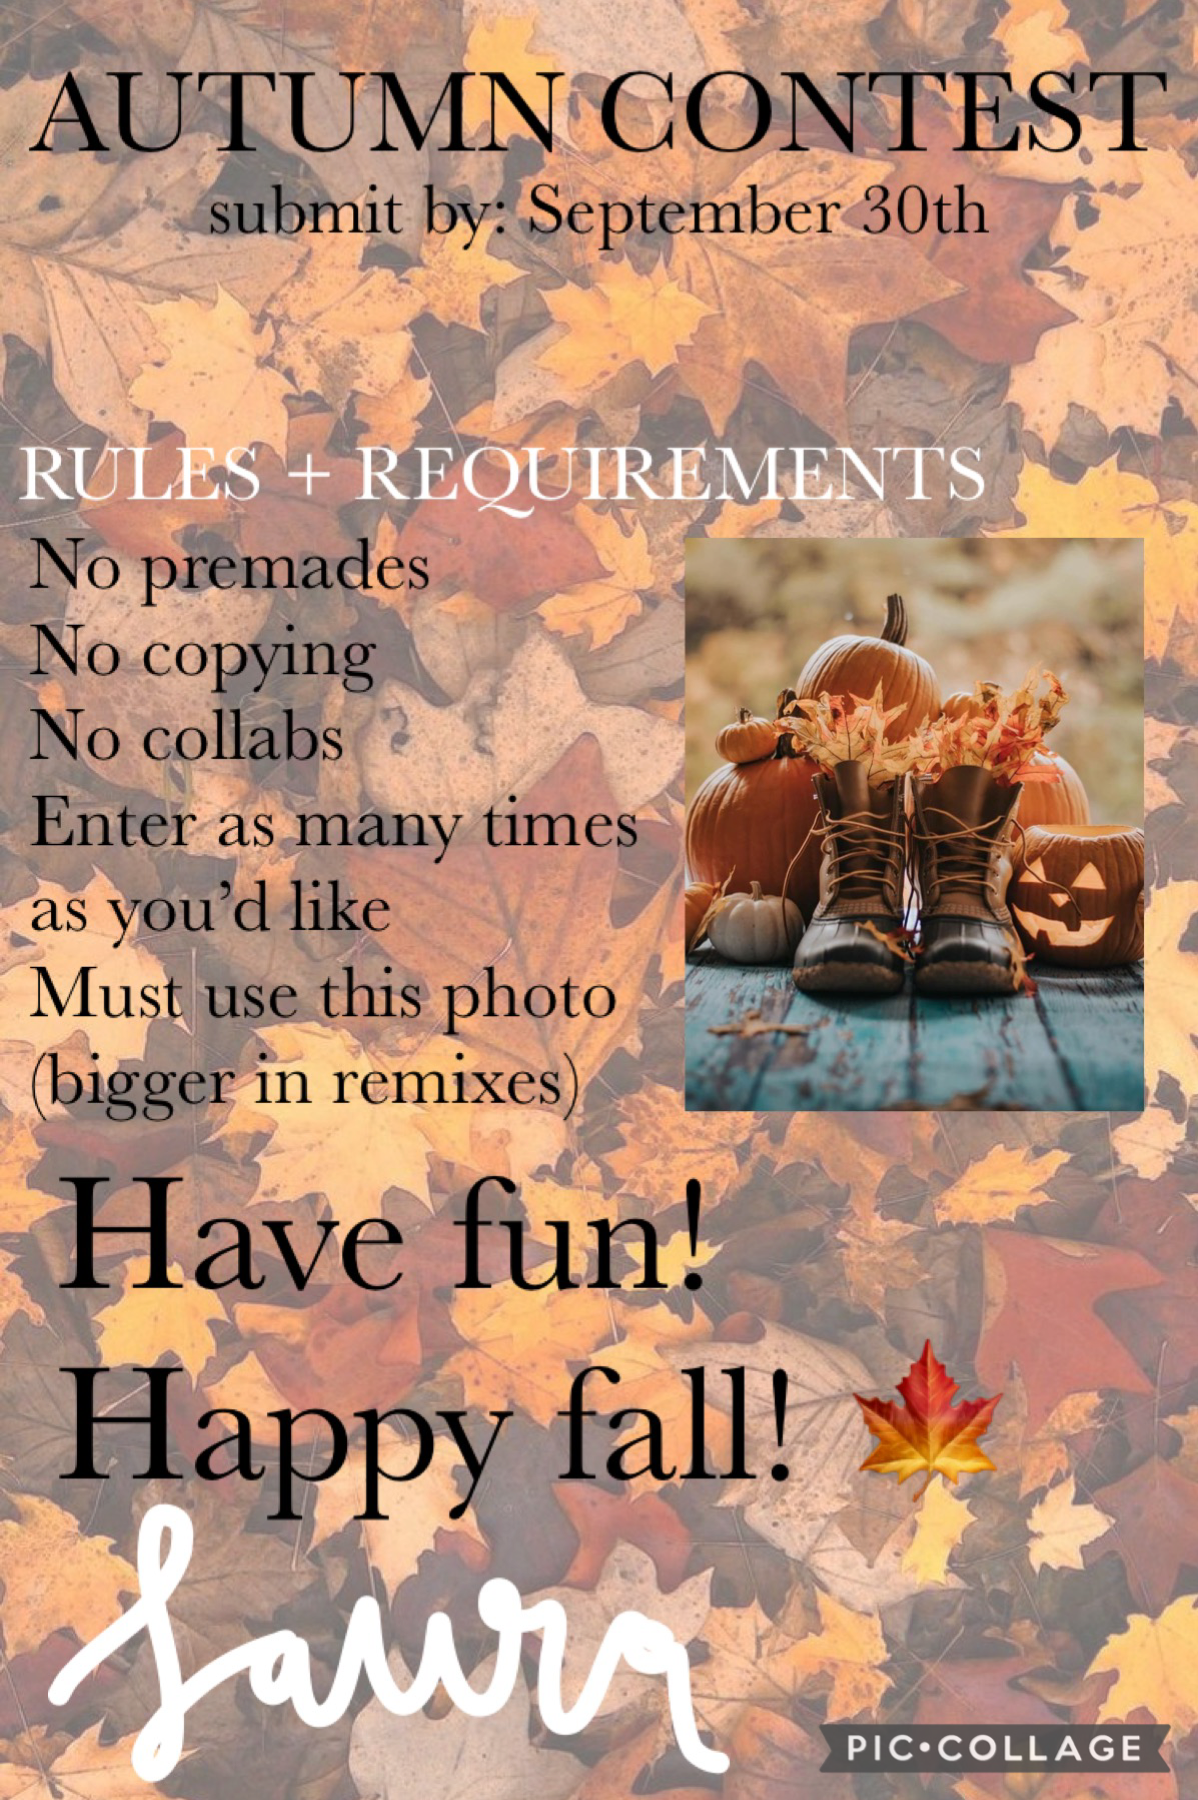 Happy autumn! Please join! 🍂 